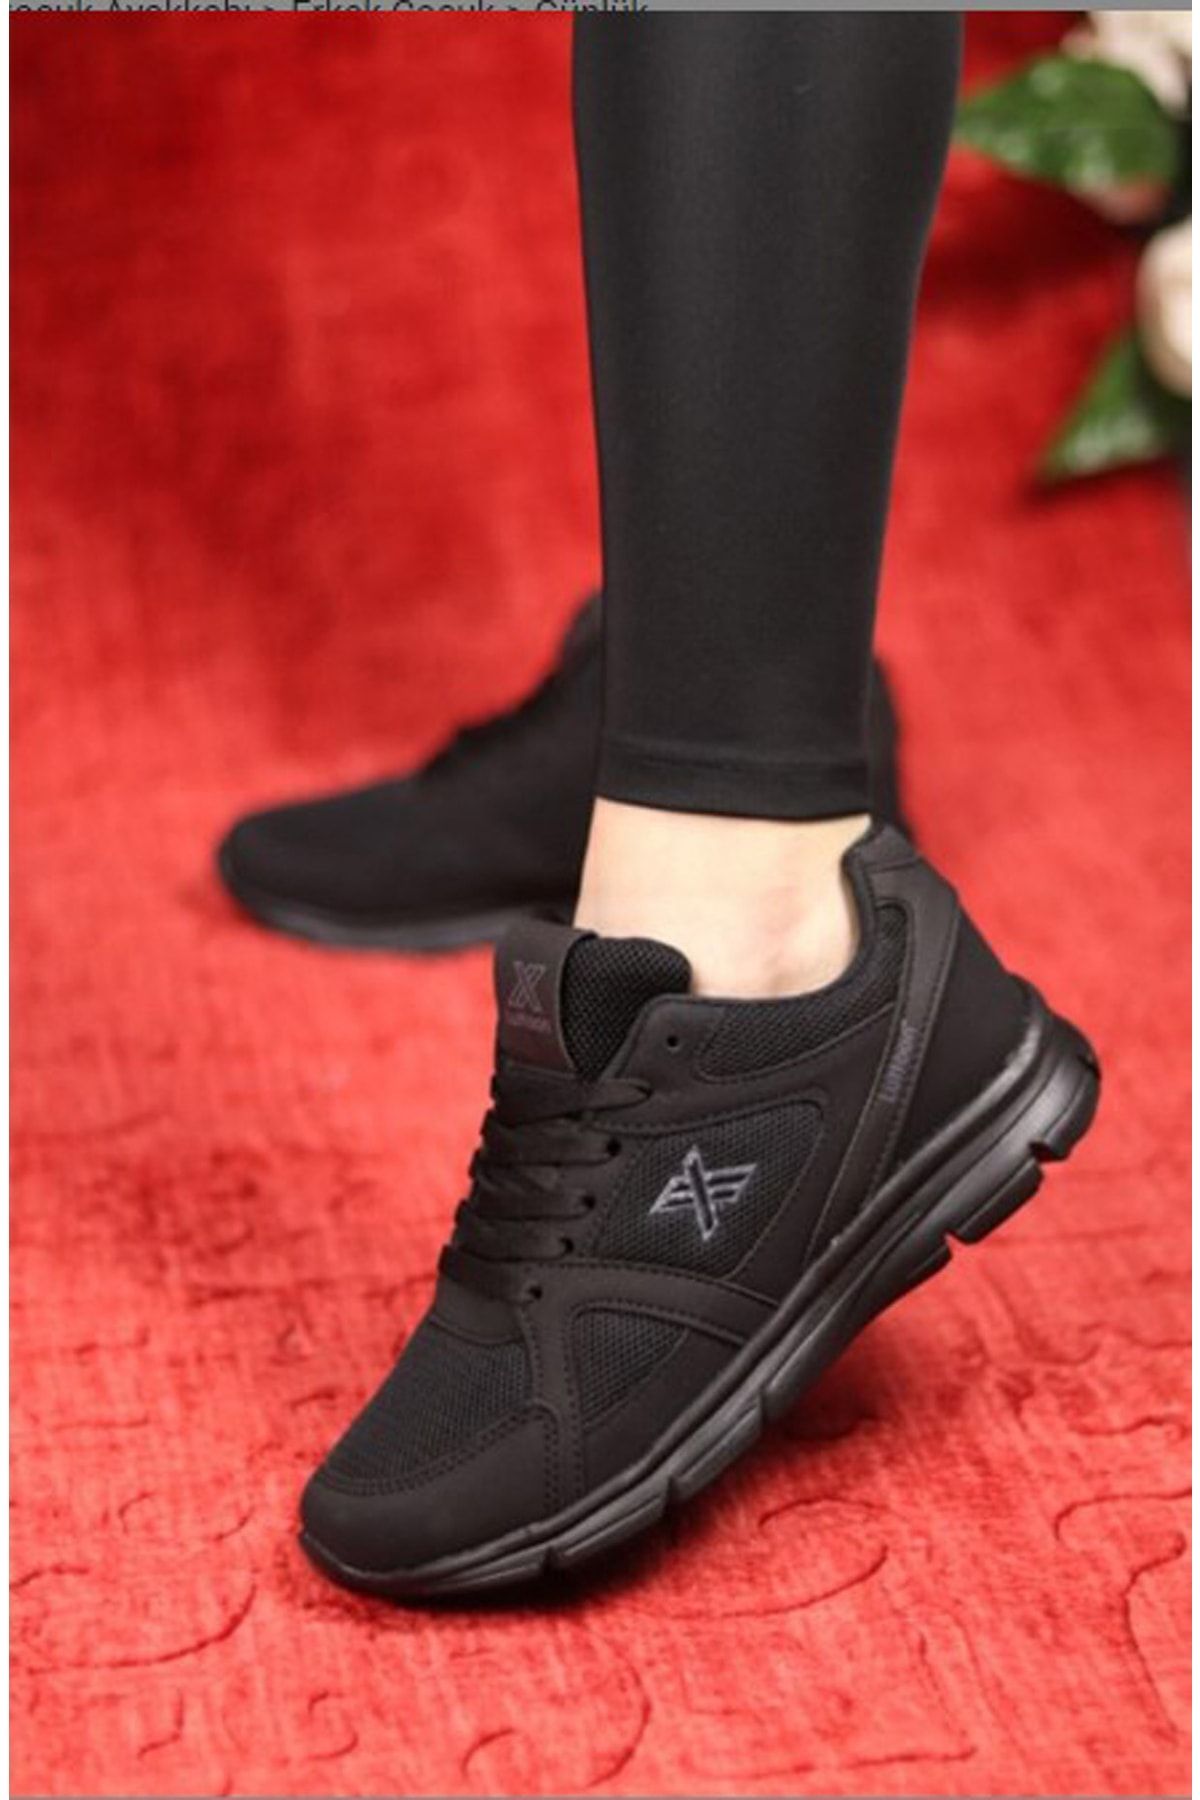 Afilli Siyah Erkek Kalın Günlük Büyük Numara Ayak 46 47 48 Spor Sneaker Yürüyüş Antrenman Ayakkabı